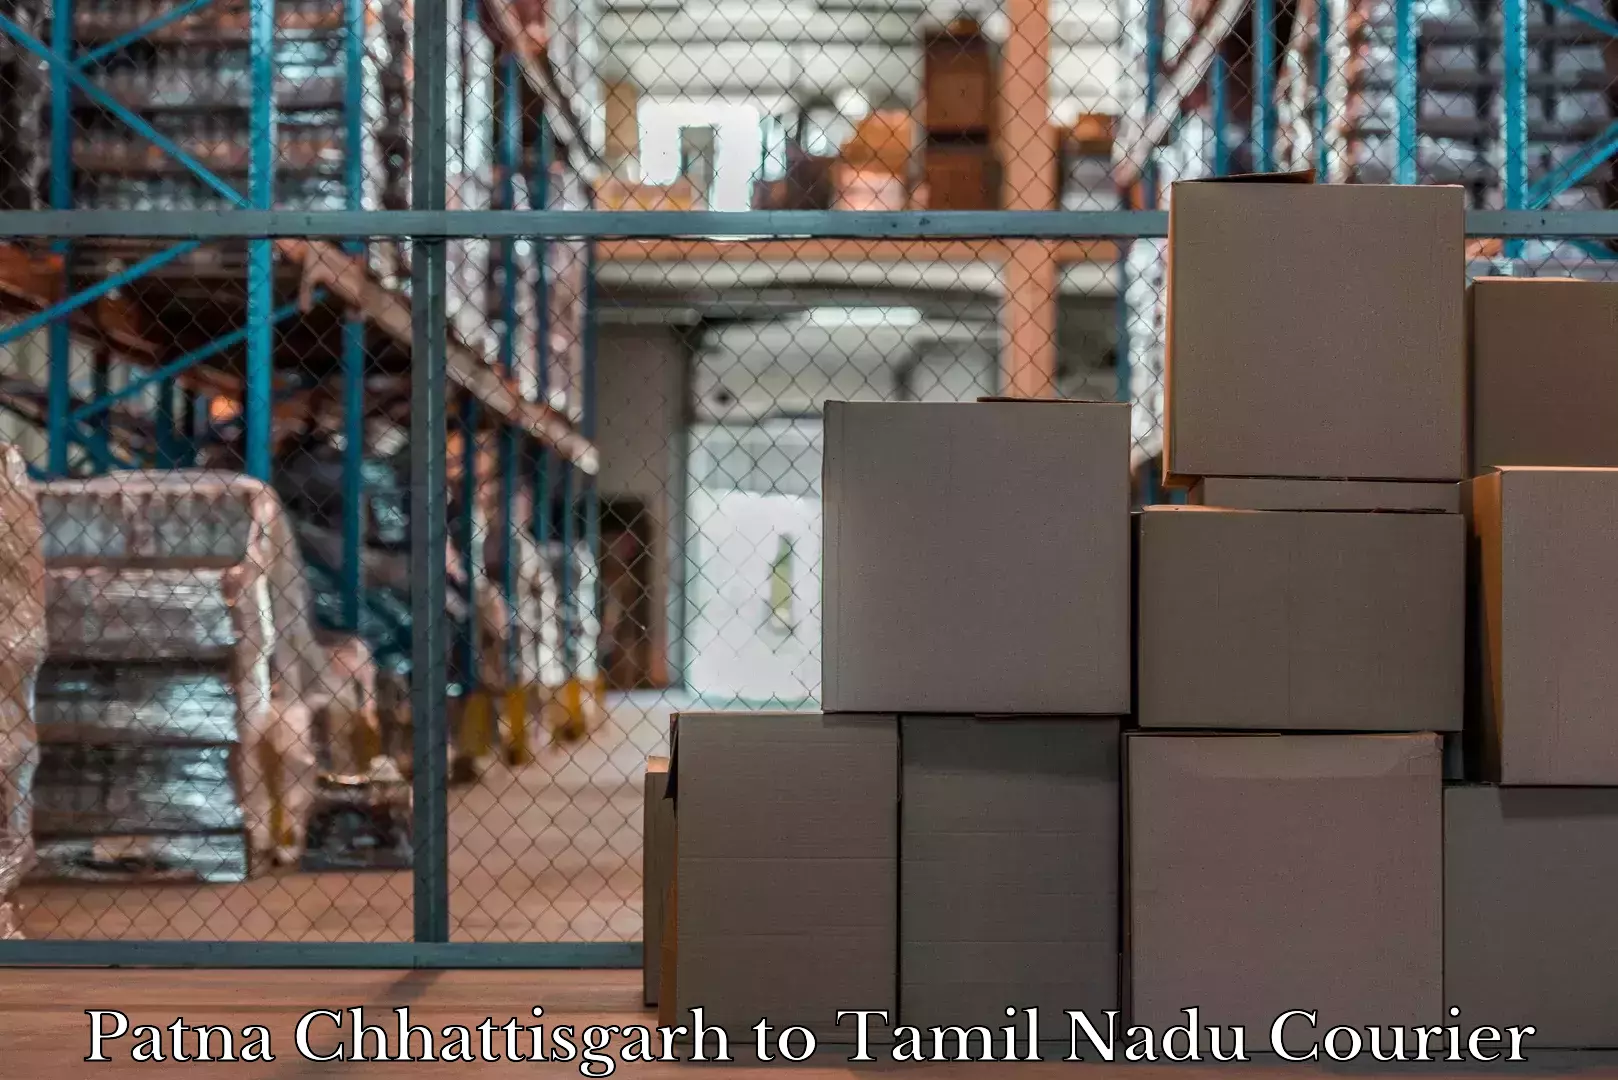 Luggage delivery estimate Patna Chhattisgarh to Vellore Institute of Technology